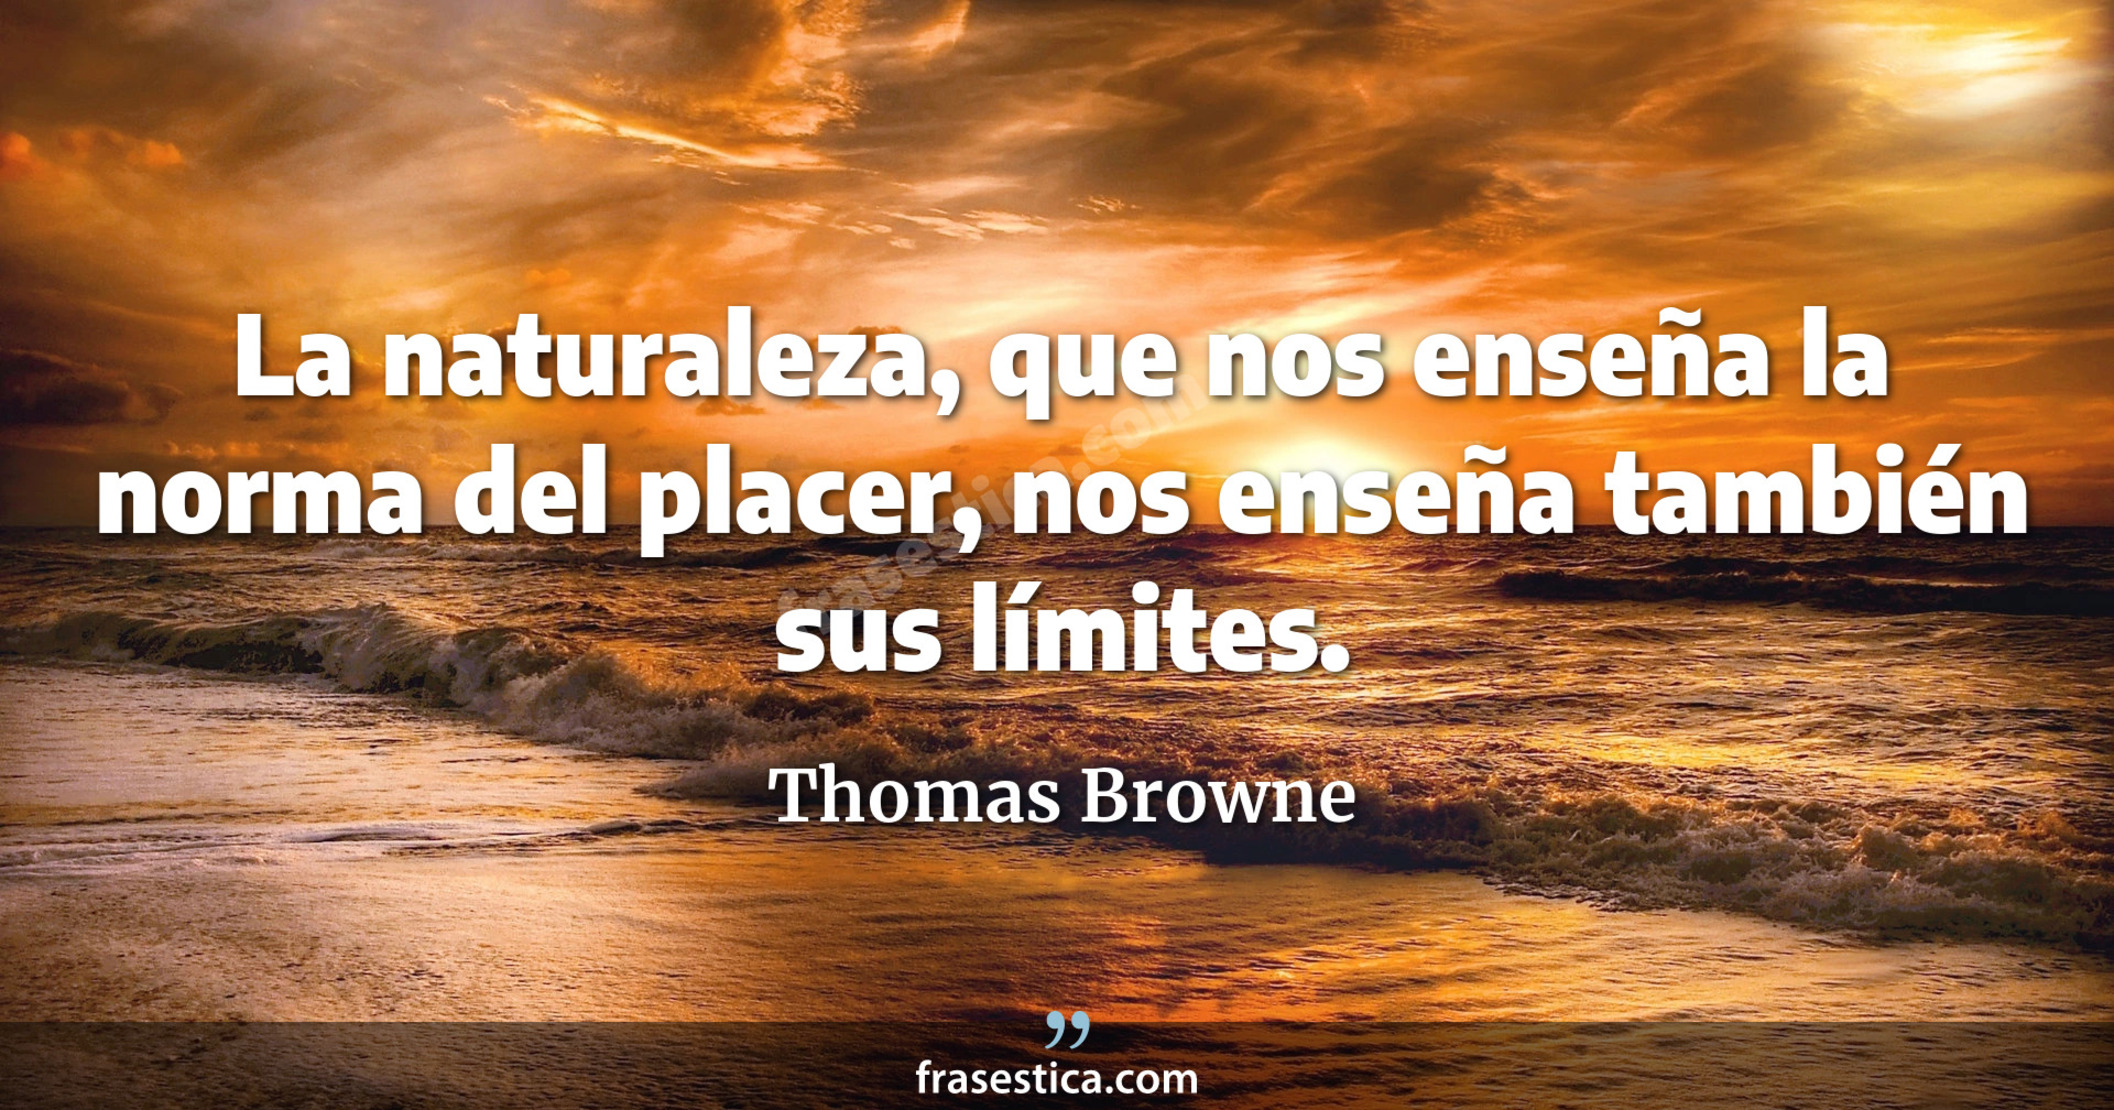 La naturaleza, que nos enseña la norma del placer, nos enseña también sus límites. - Thomas Browne